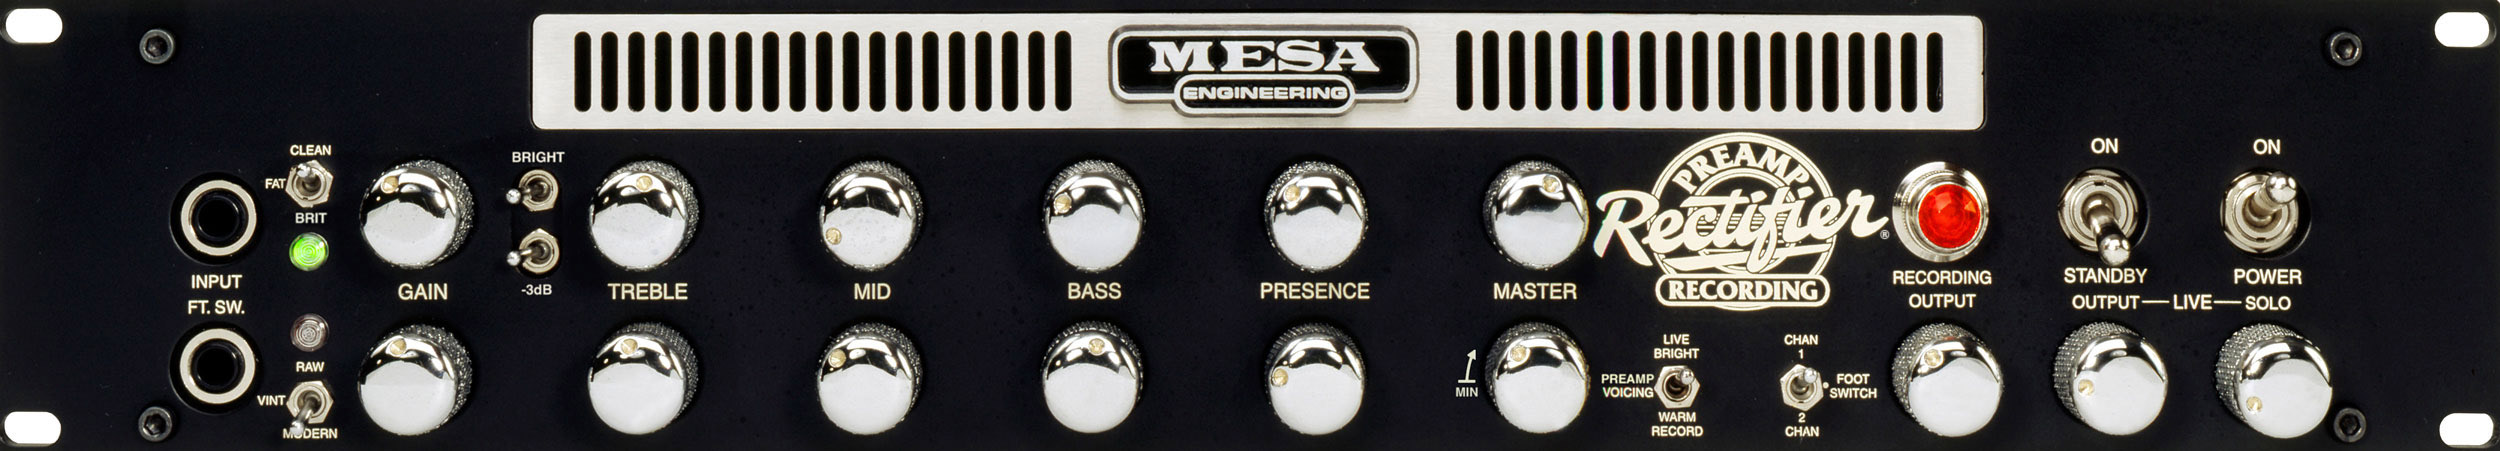 Rectifier Recording Preamp | MESA/Boogie®